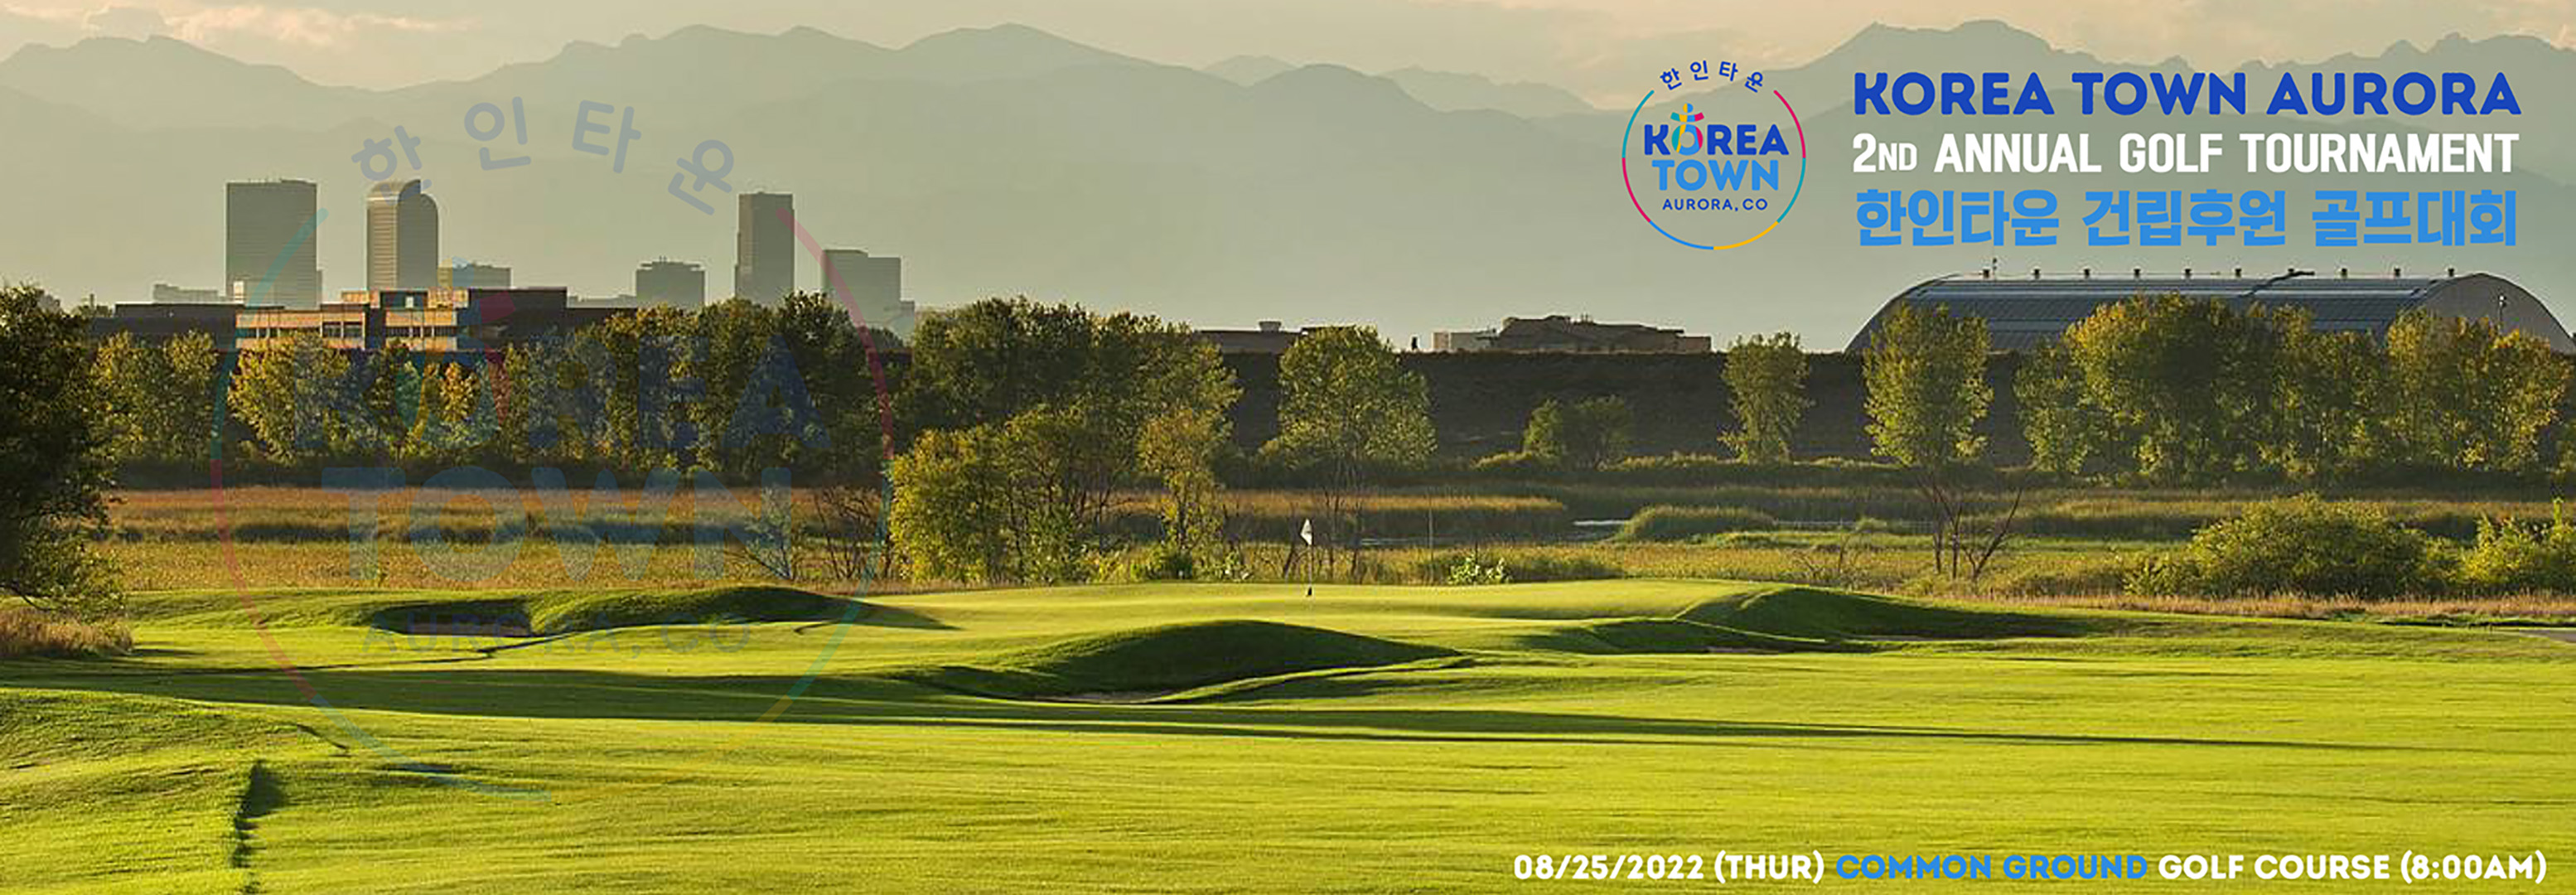 korean golf tour 2022